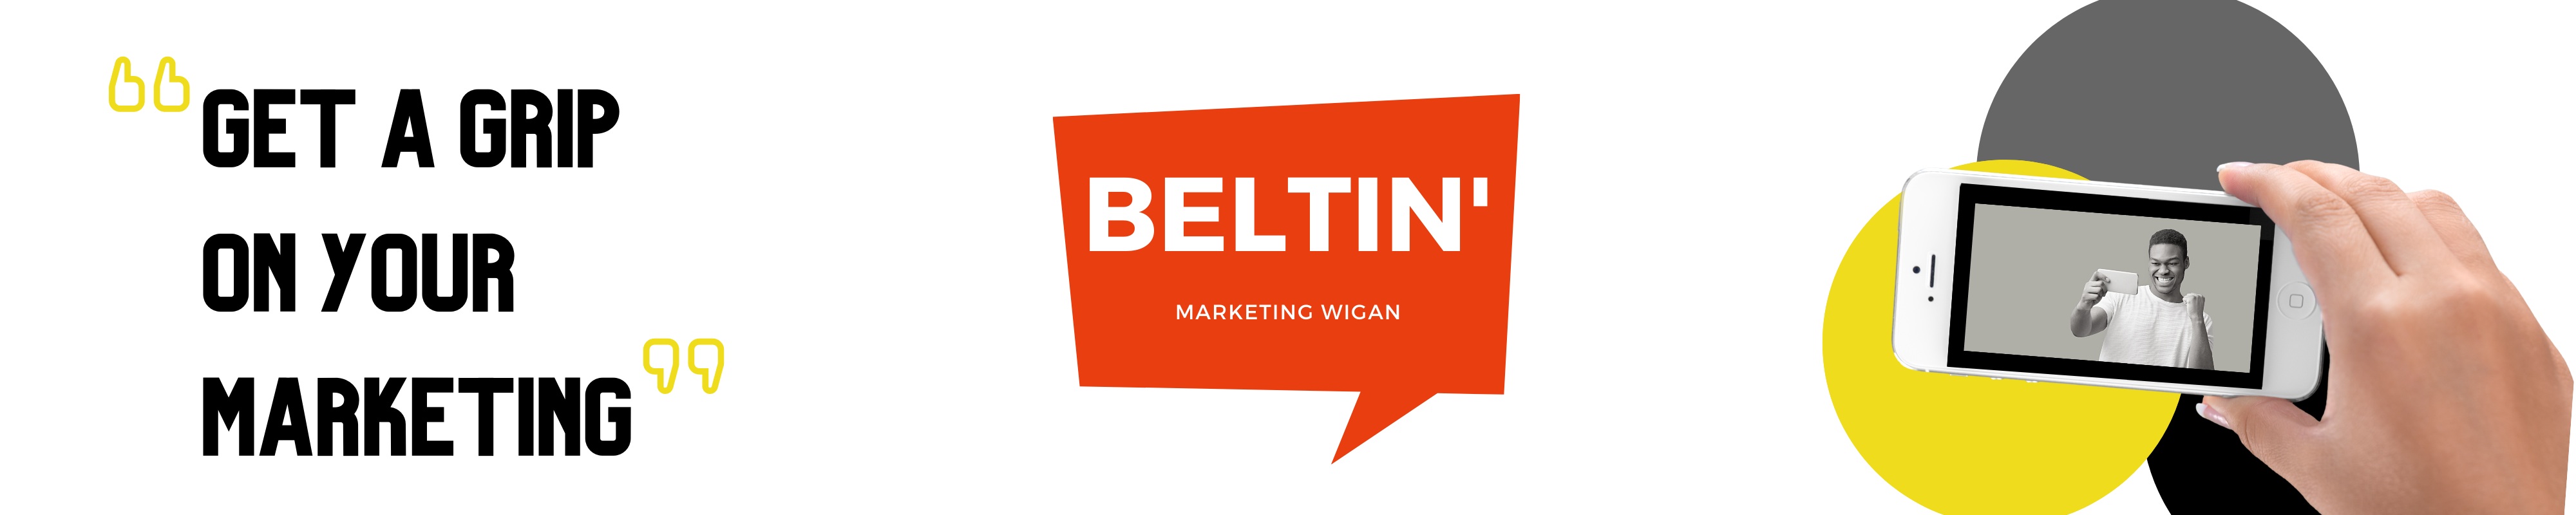 Beltin marketing wigan slider 1